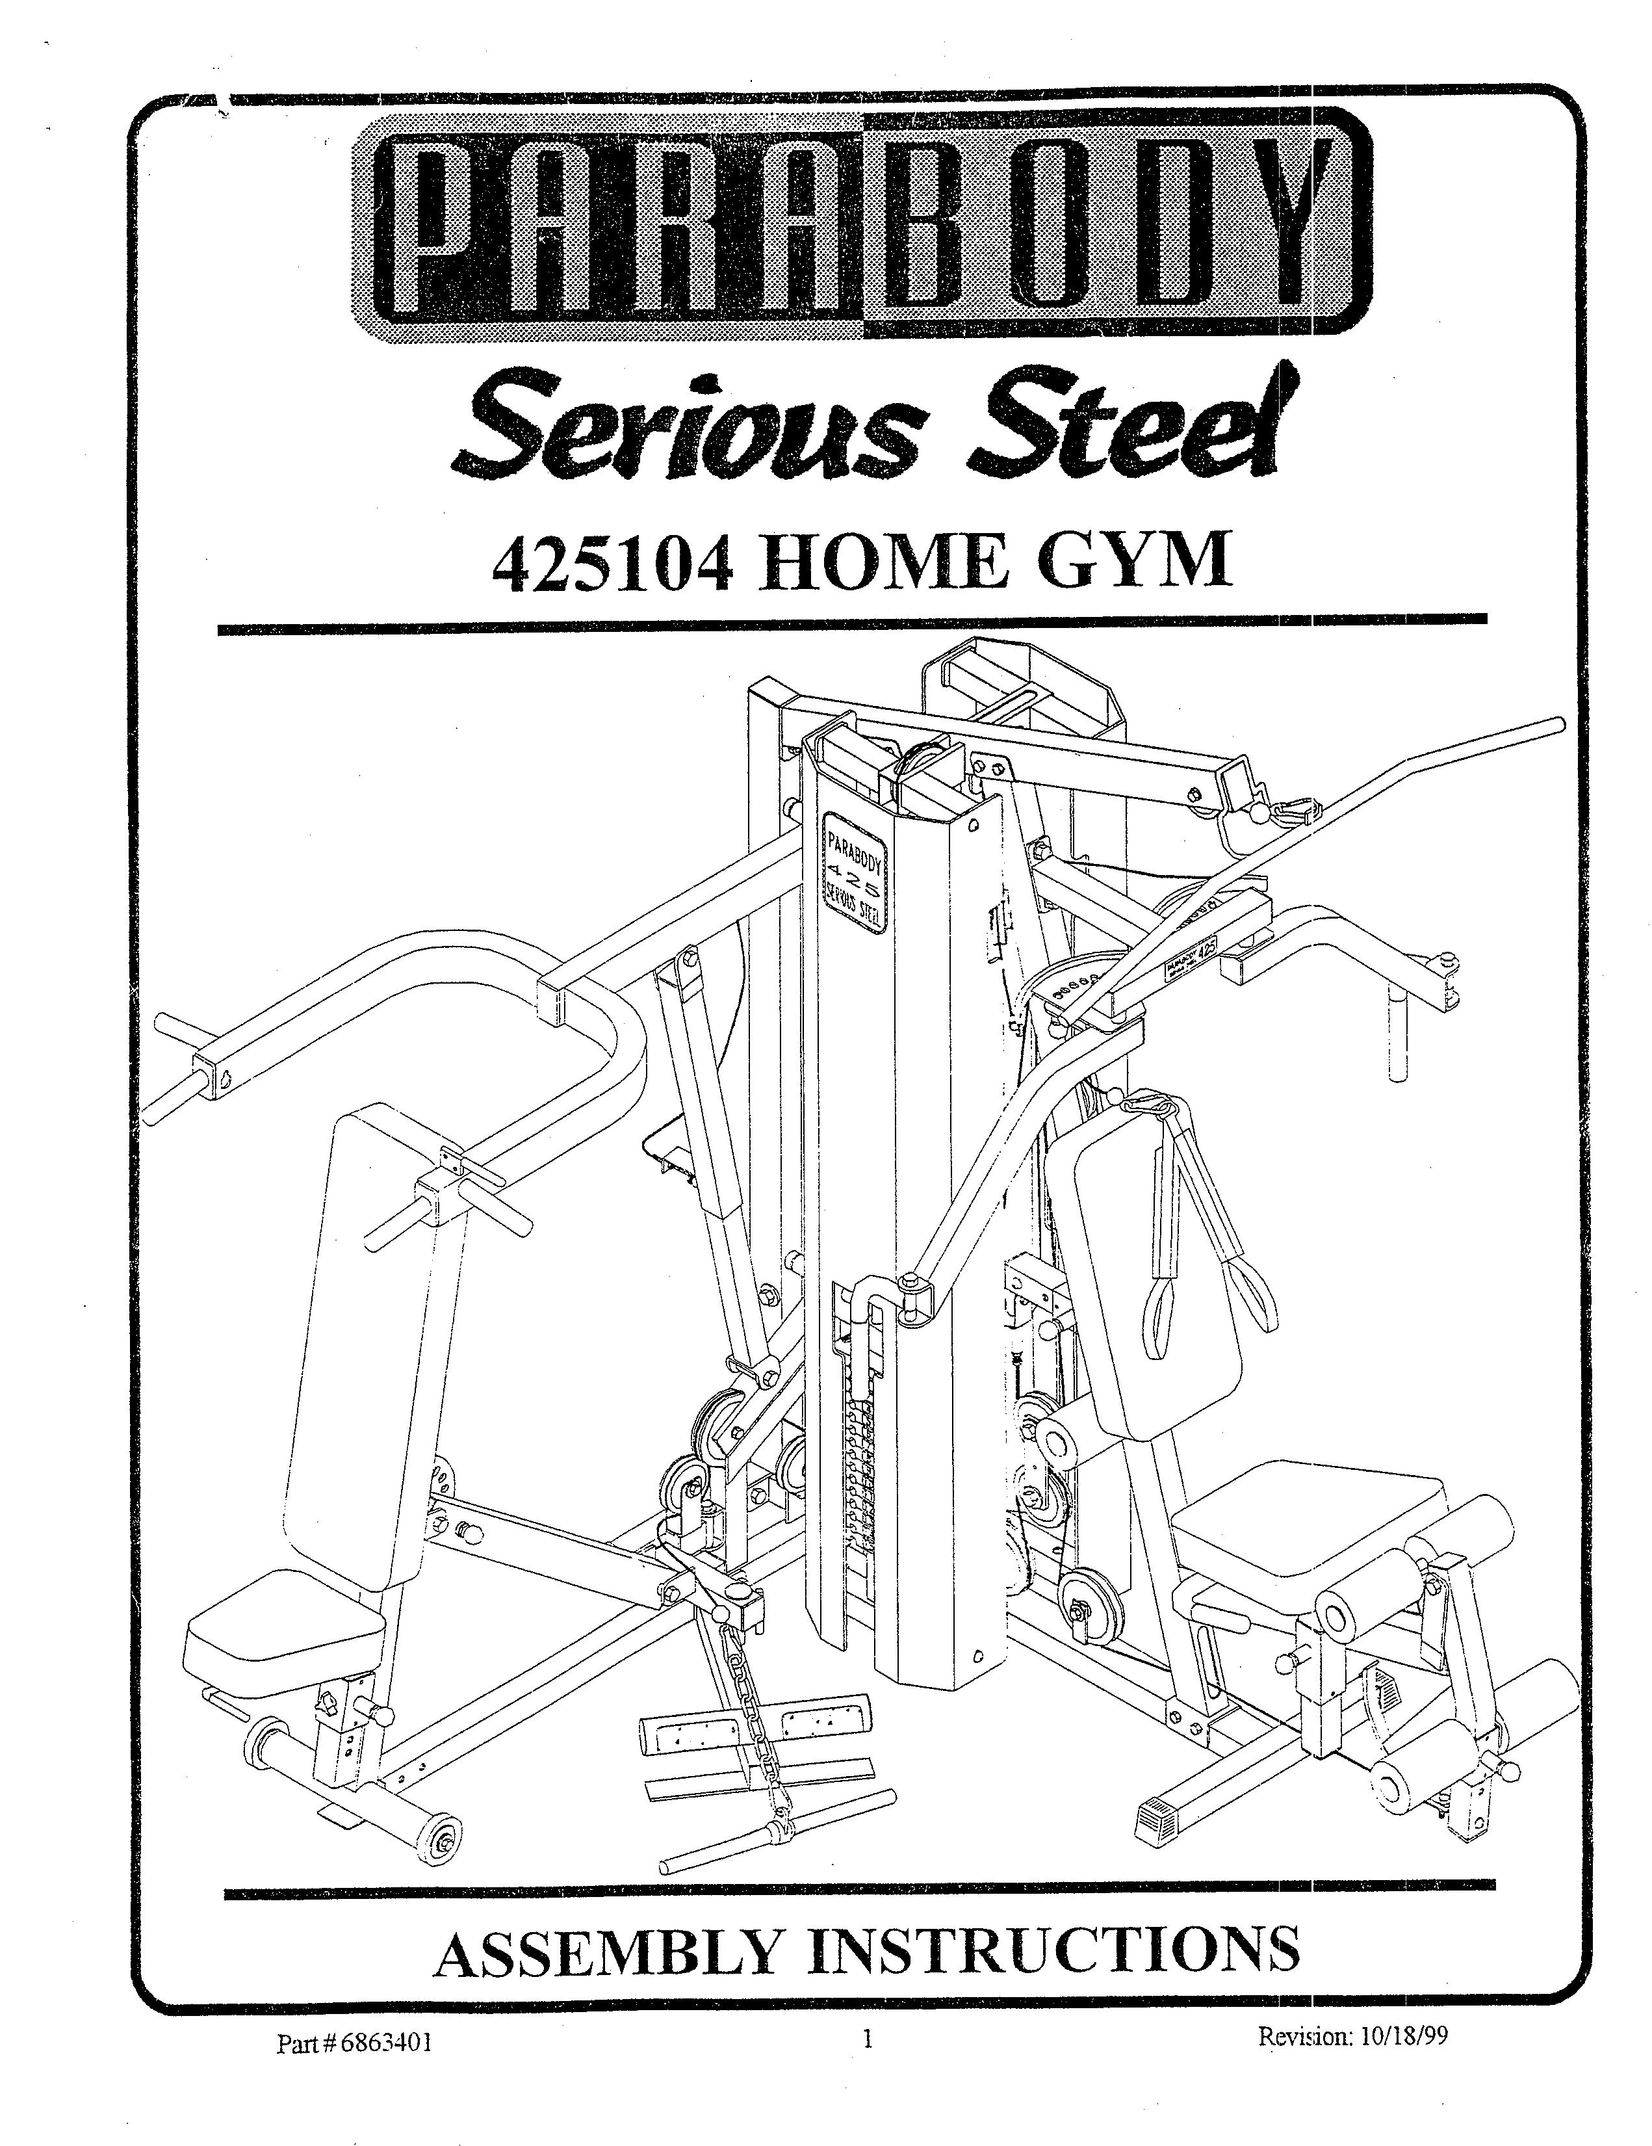 ParaBody 425104 Home Gym User Manual